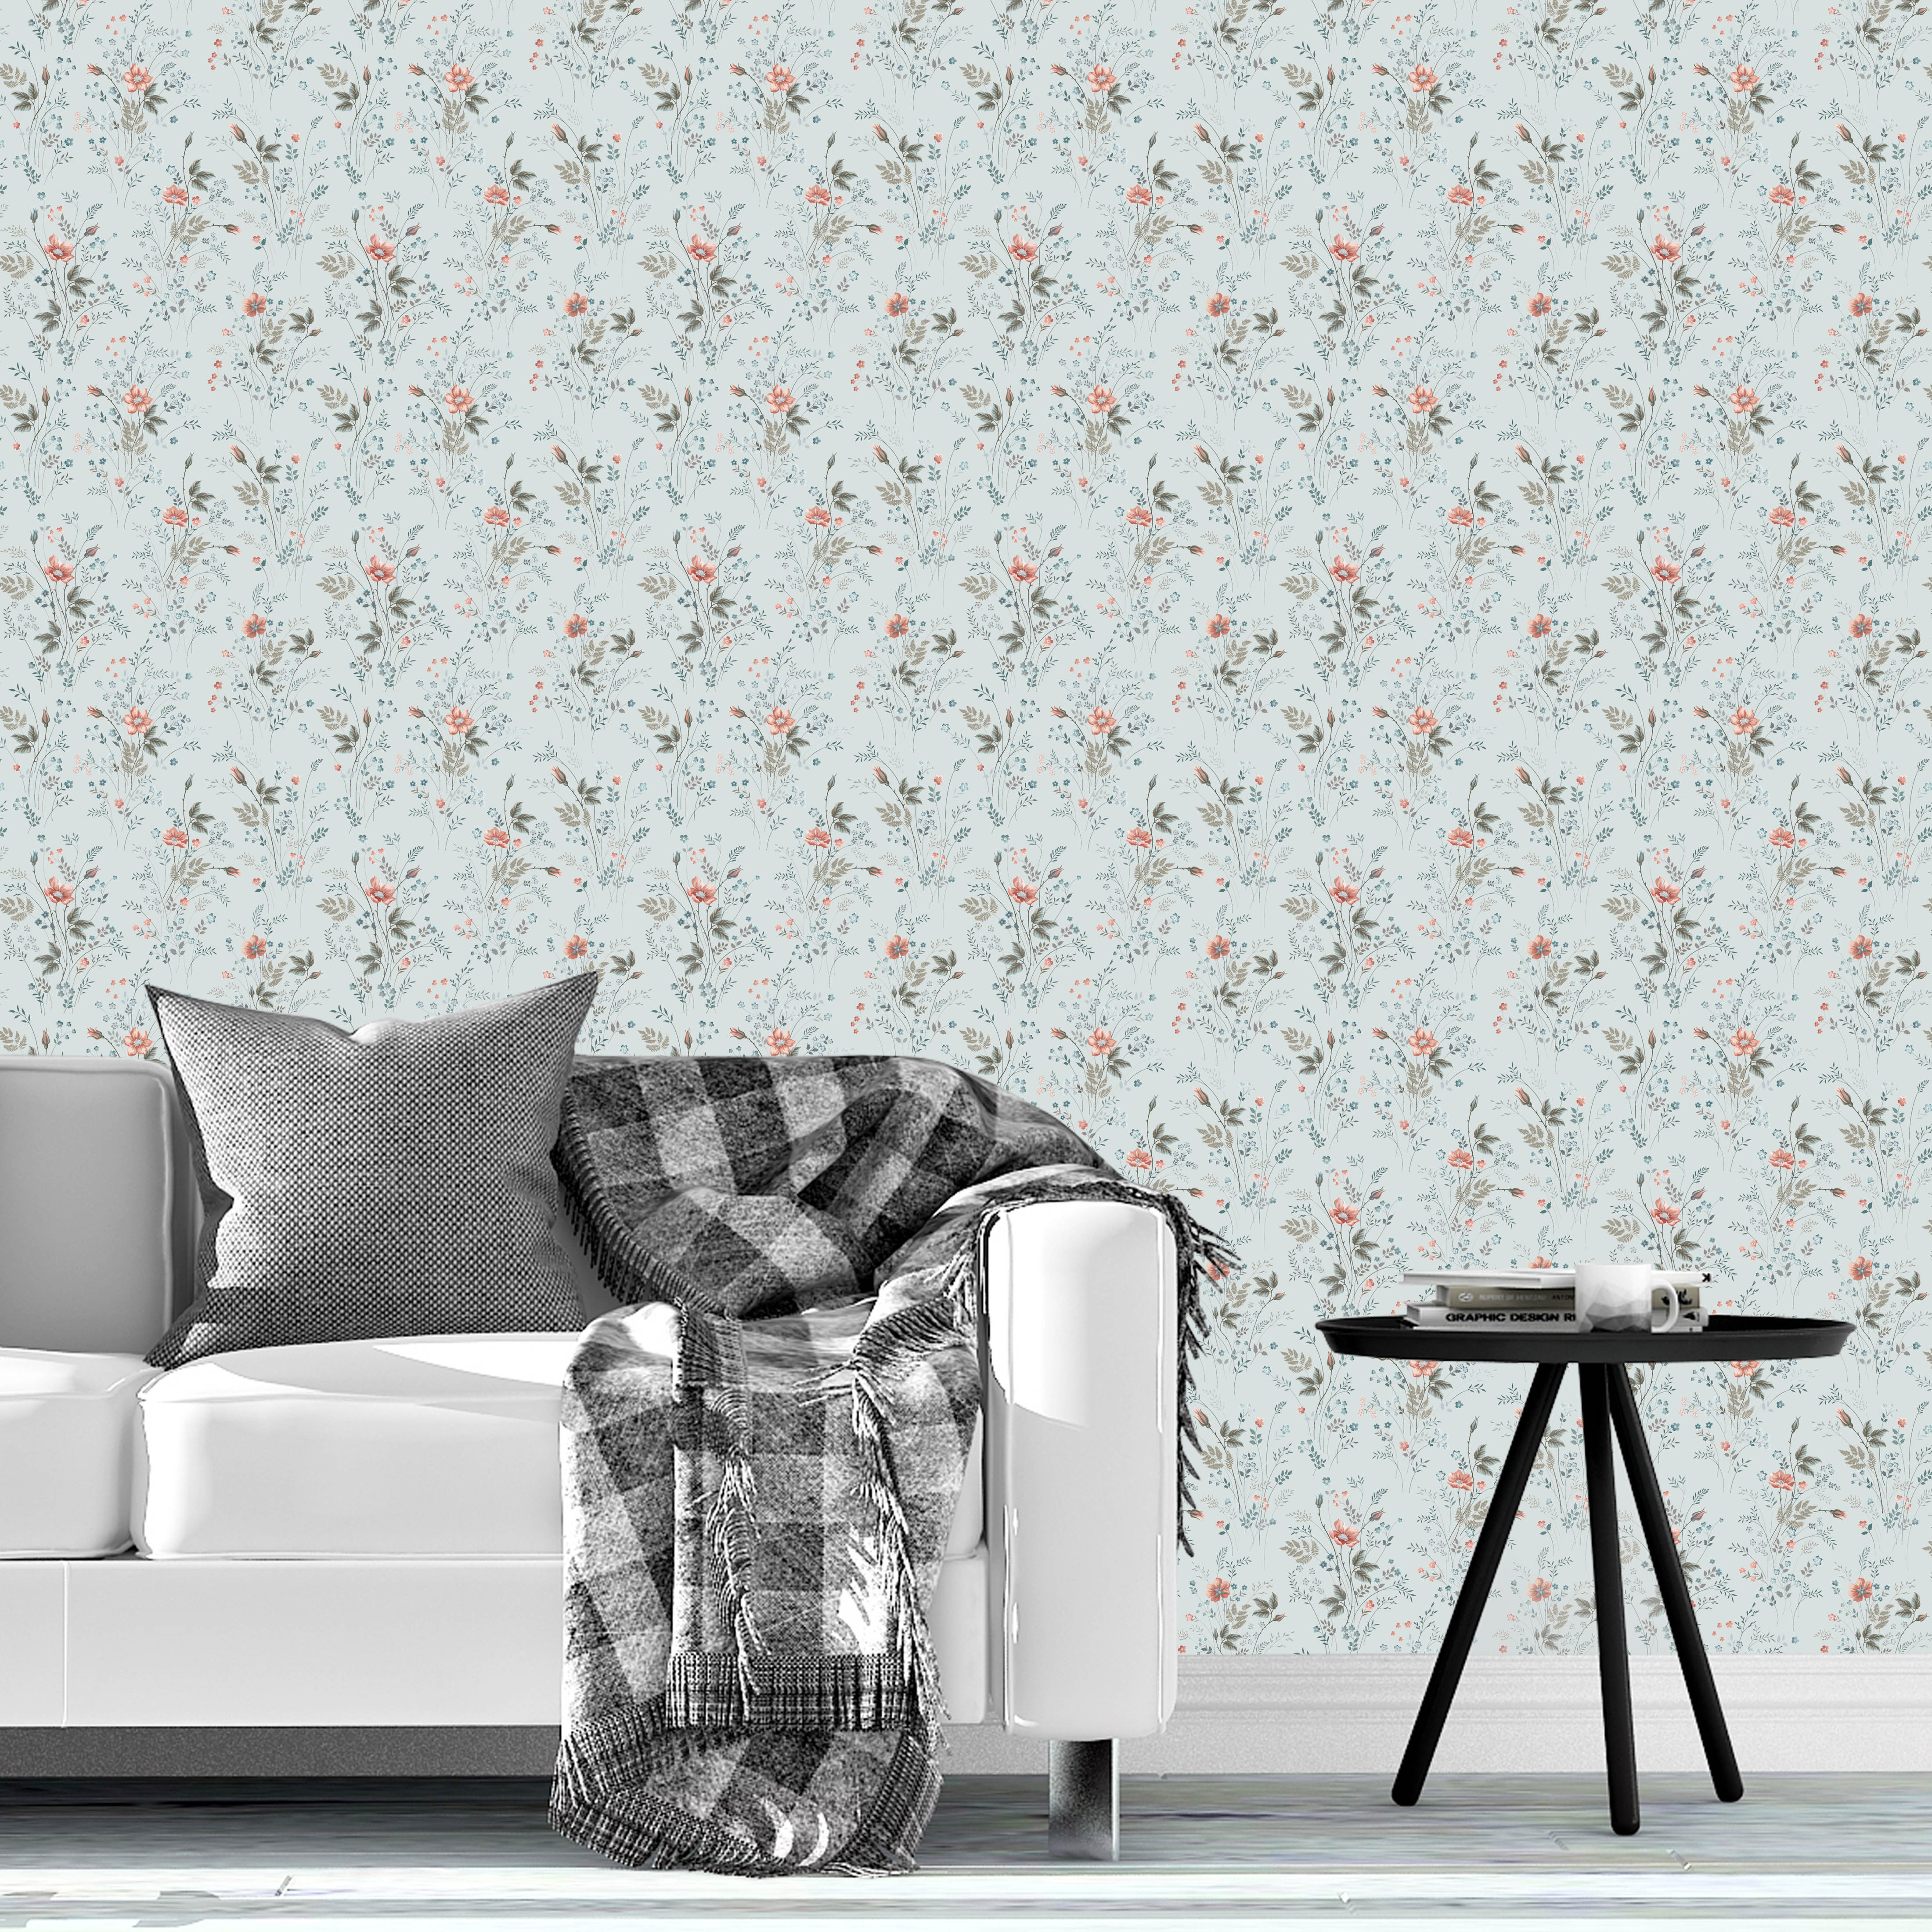 Custom Removable Wallpaper Australia  Make Your Own Wallpaper   misterwallpapercomau